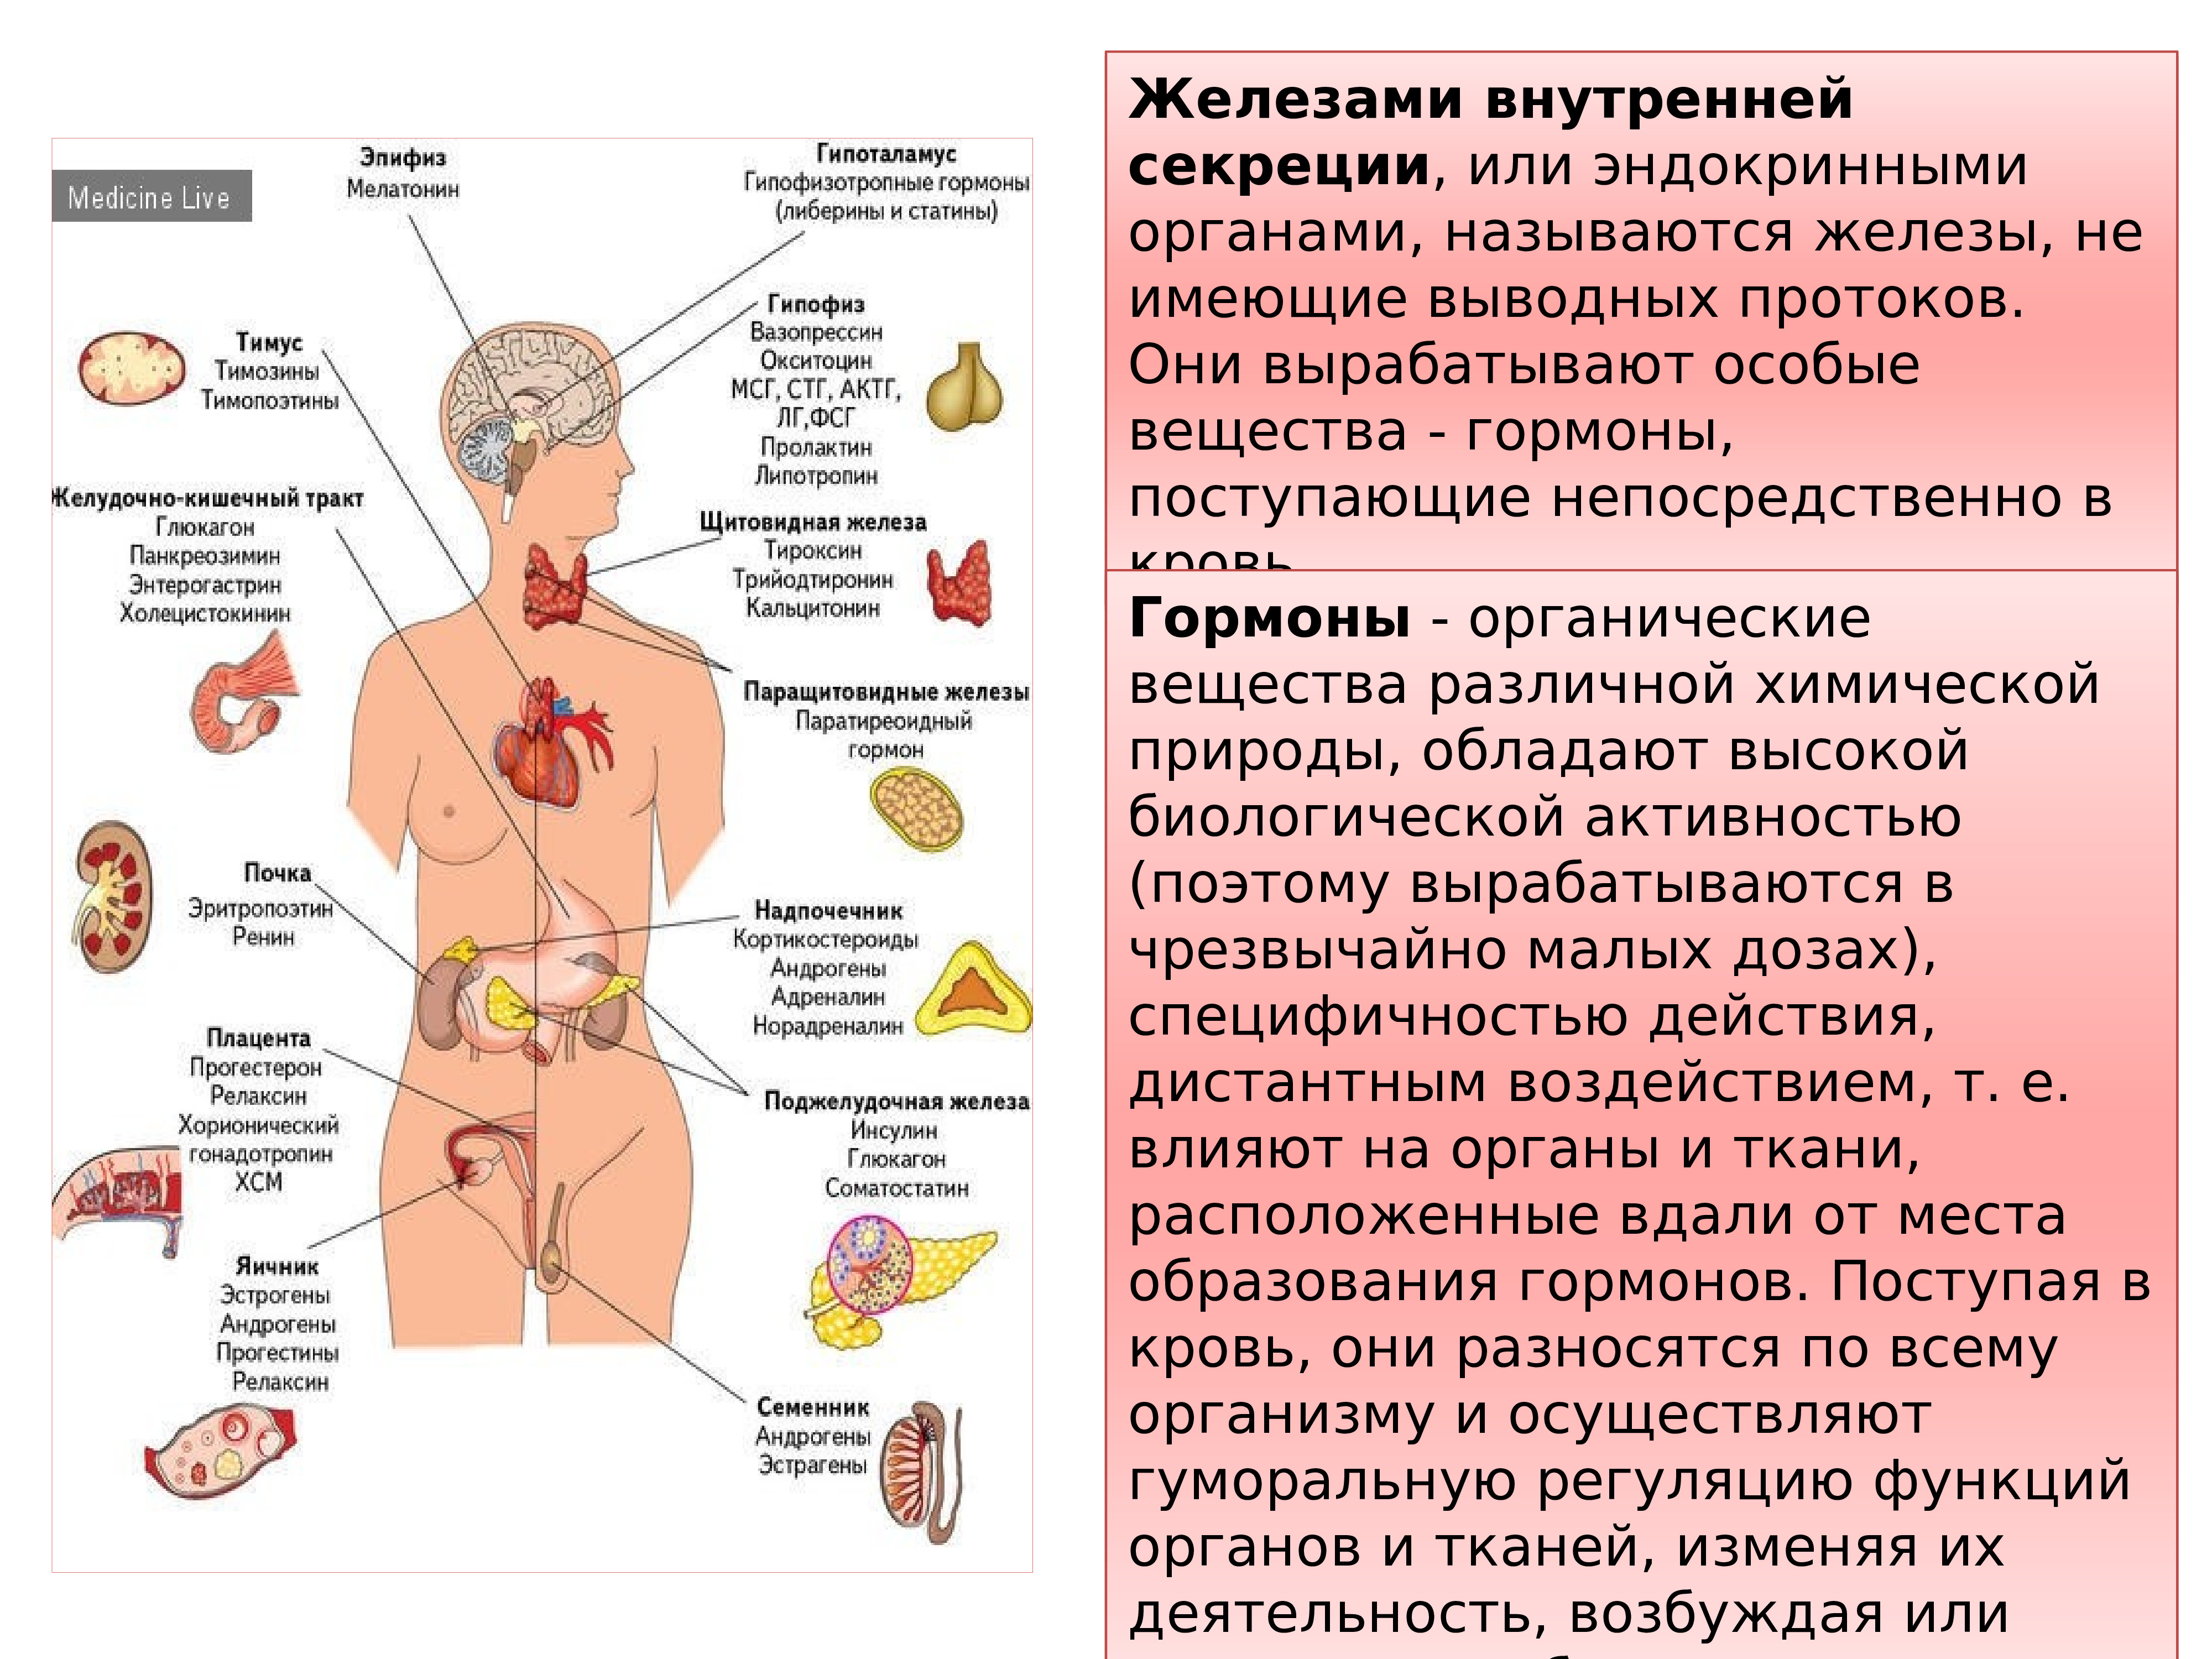 Какие железы связаны с эндокринной системой. Эндокринная система человека гормоны и их функции. Эндокринная система состоит из желез внутренней секреции. Эндокринная система и эндокринные железы. Название желёз внутренней секреции на изображение.